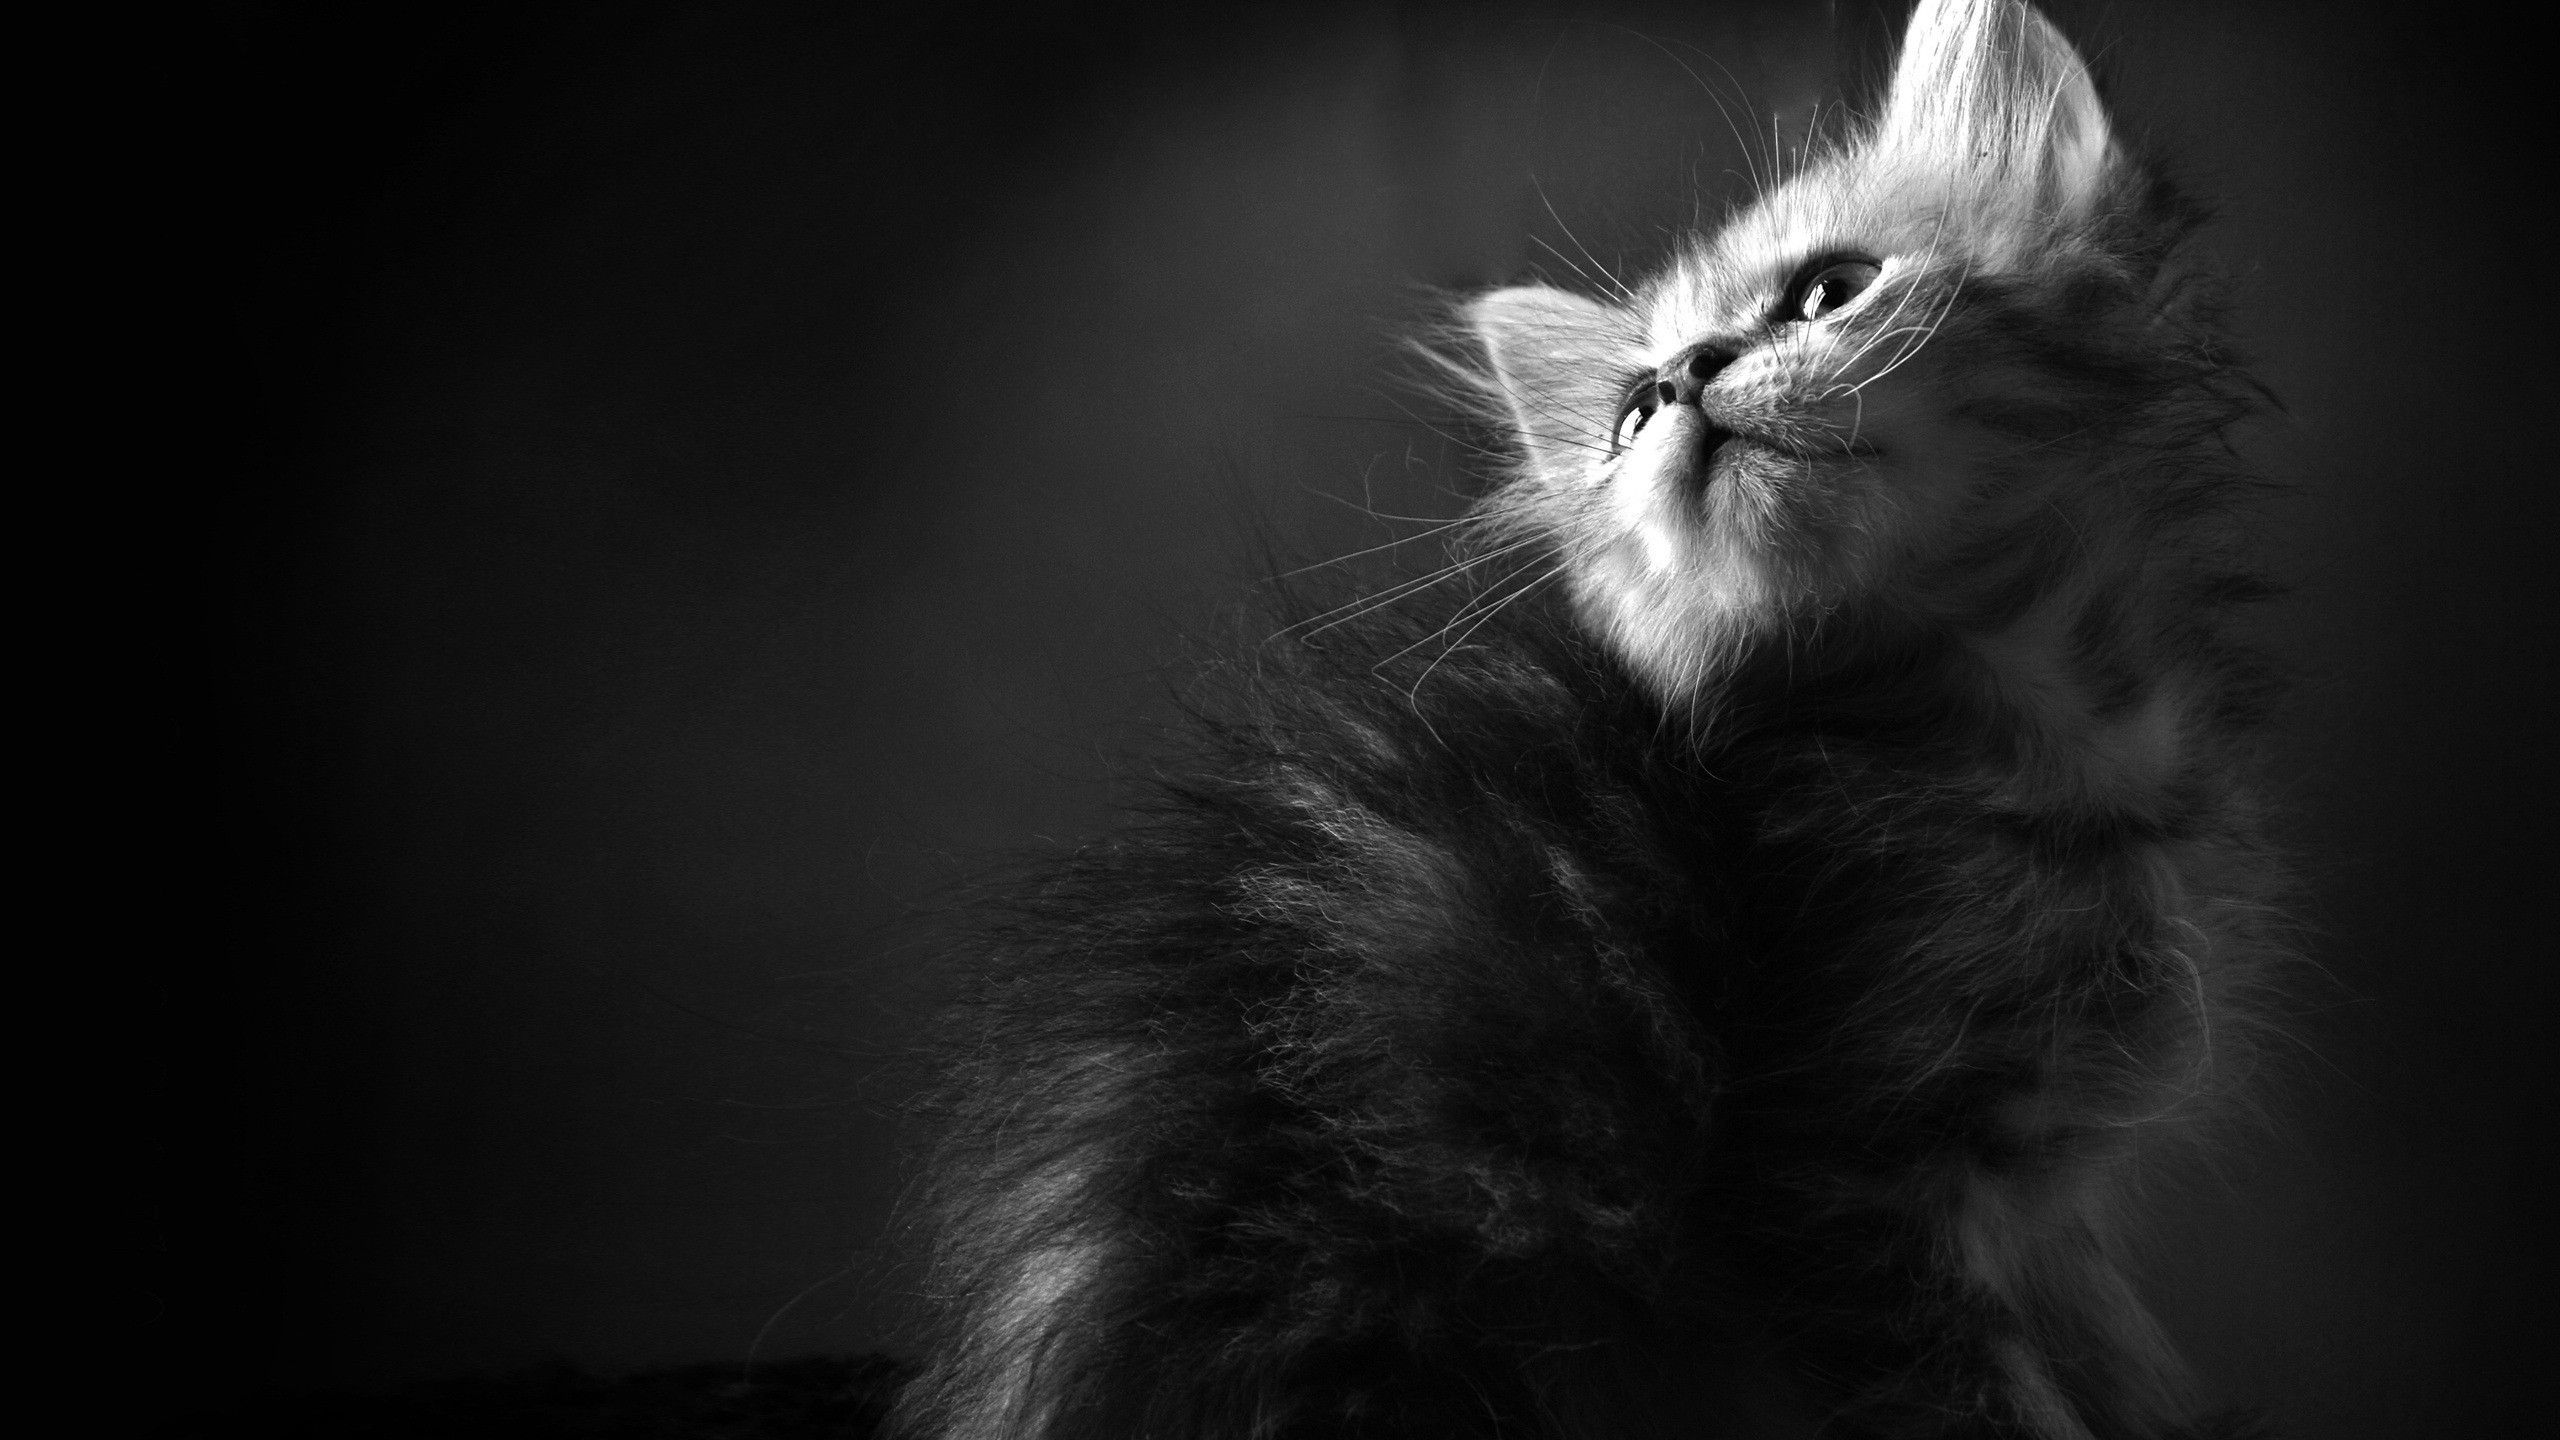  Katze Hintergrundbild 2560x1440. Kostenlose Hintergrundbilder Graustufenfoto Einer Katze Mit Schwarzen Augen, Bilder Für Ihren Desktop Und Fotos